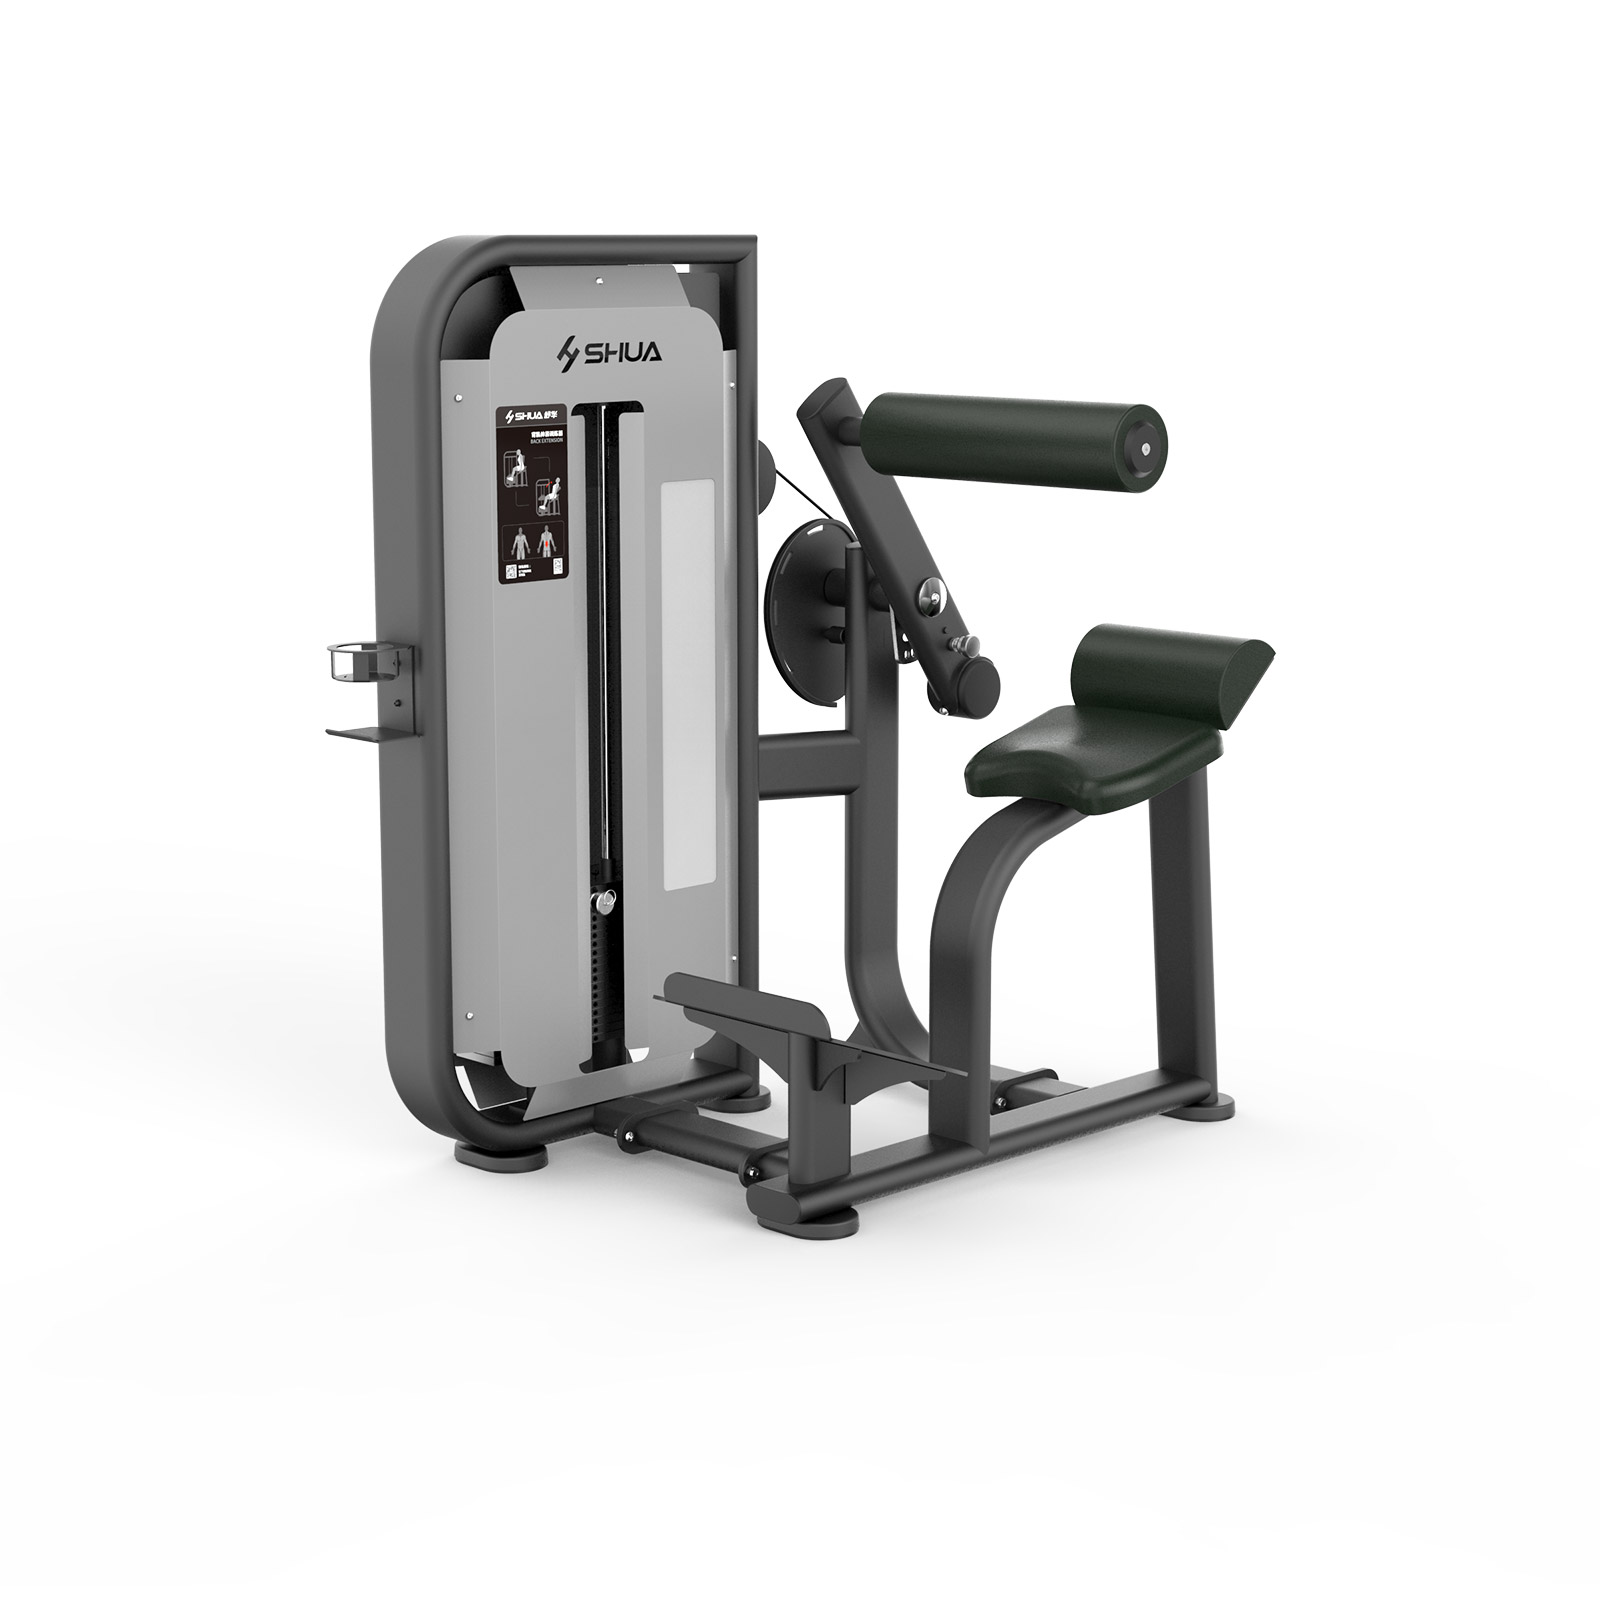 舒华品牌  力量训练器材/健身器材   SH-6817背肌伸展训练器